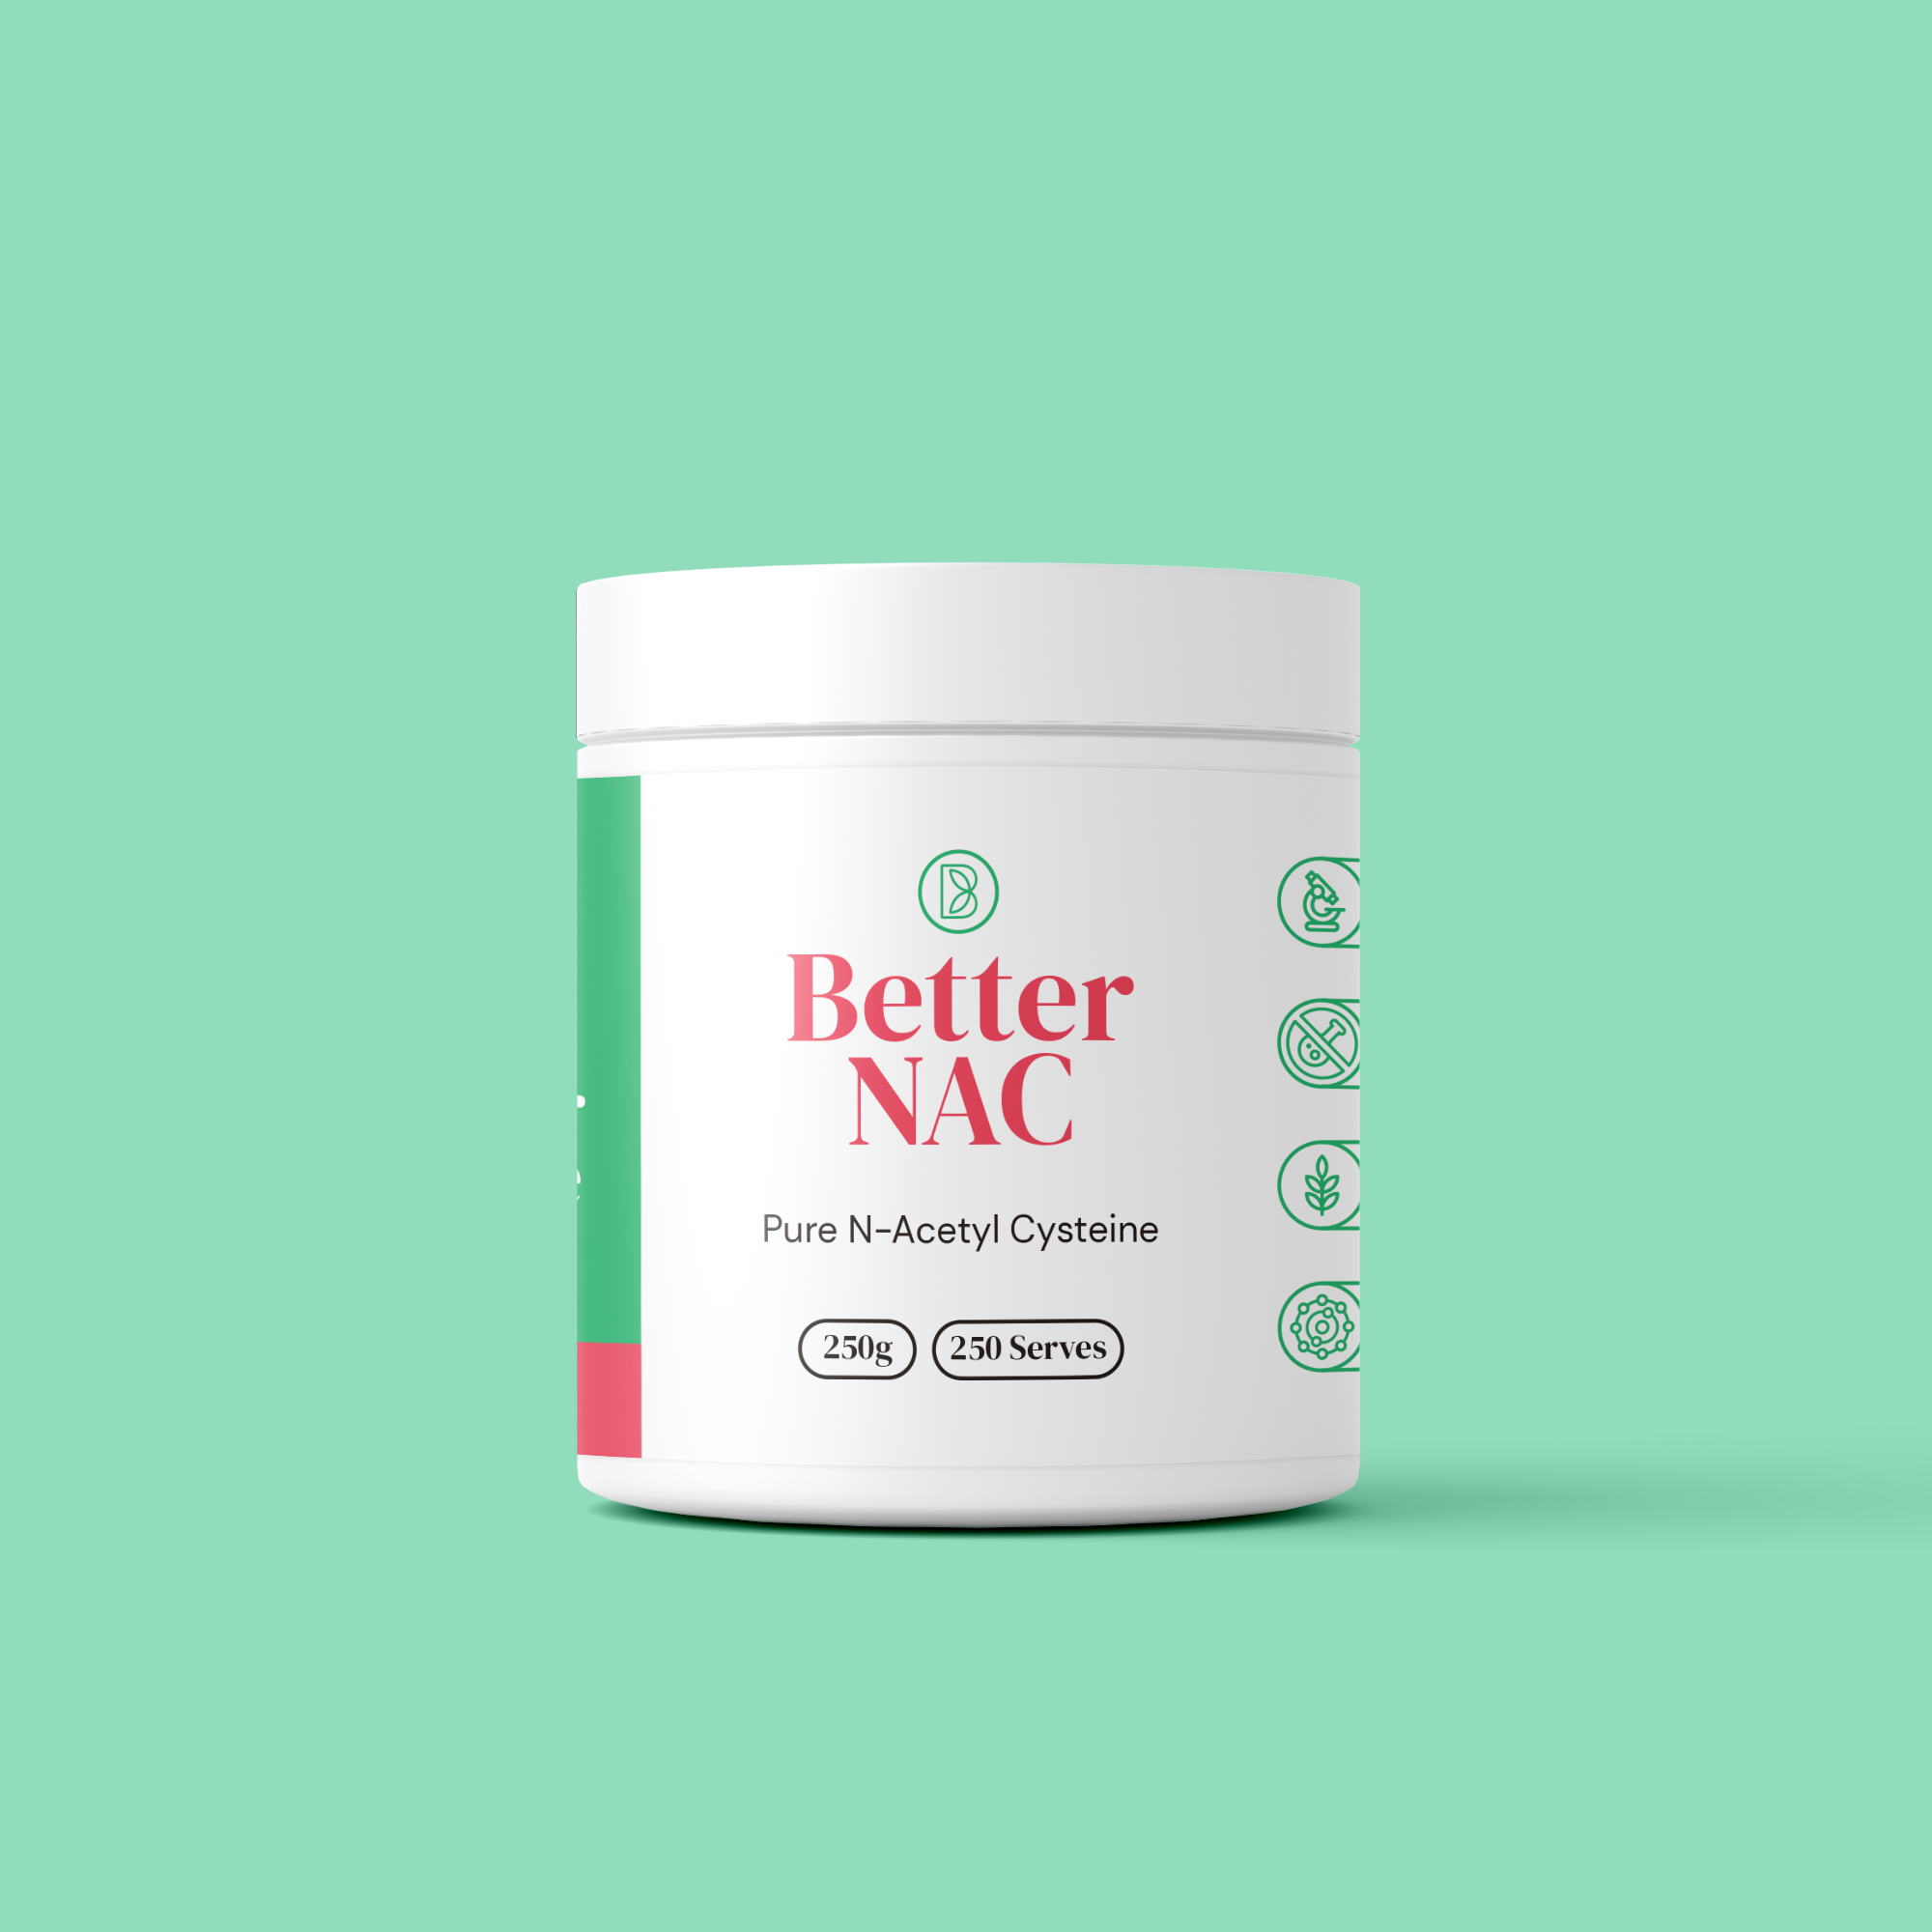 250g Better NAC - Pure N-Acetyl Cysteine